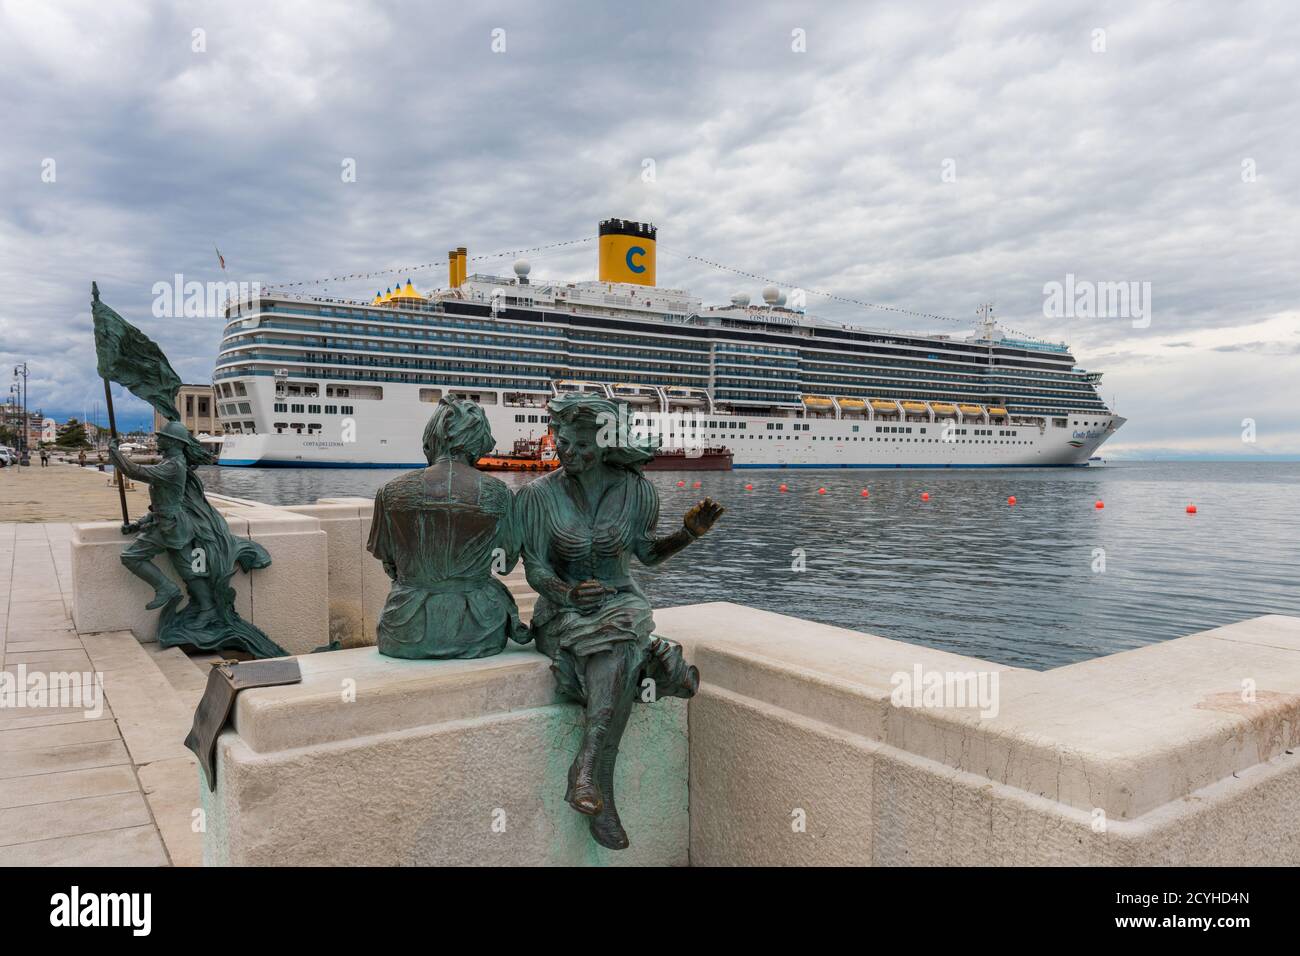 Luxury cruise ship Costa Deliziosa; Bersagliere monument and Le Sartine statue in the foreground - Trieste, Friuli Venezia Giulia, Italy Stock Photo